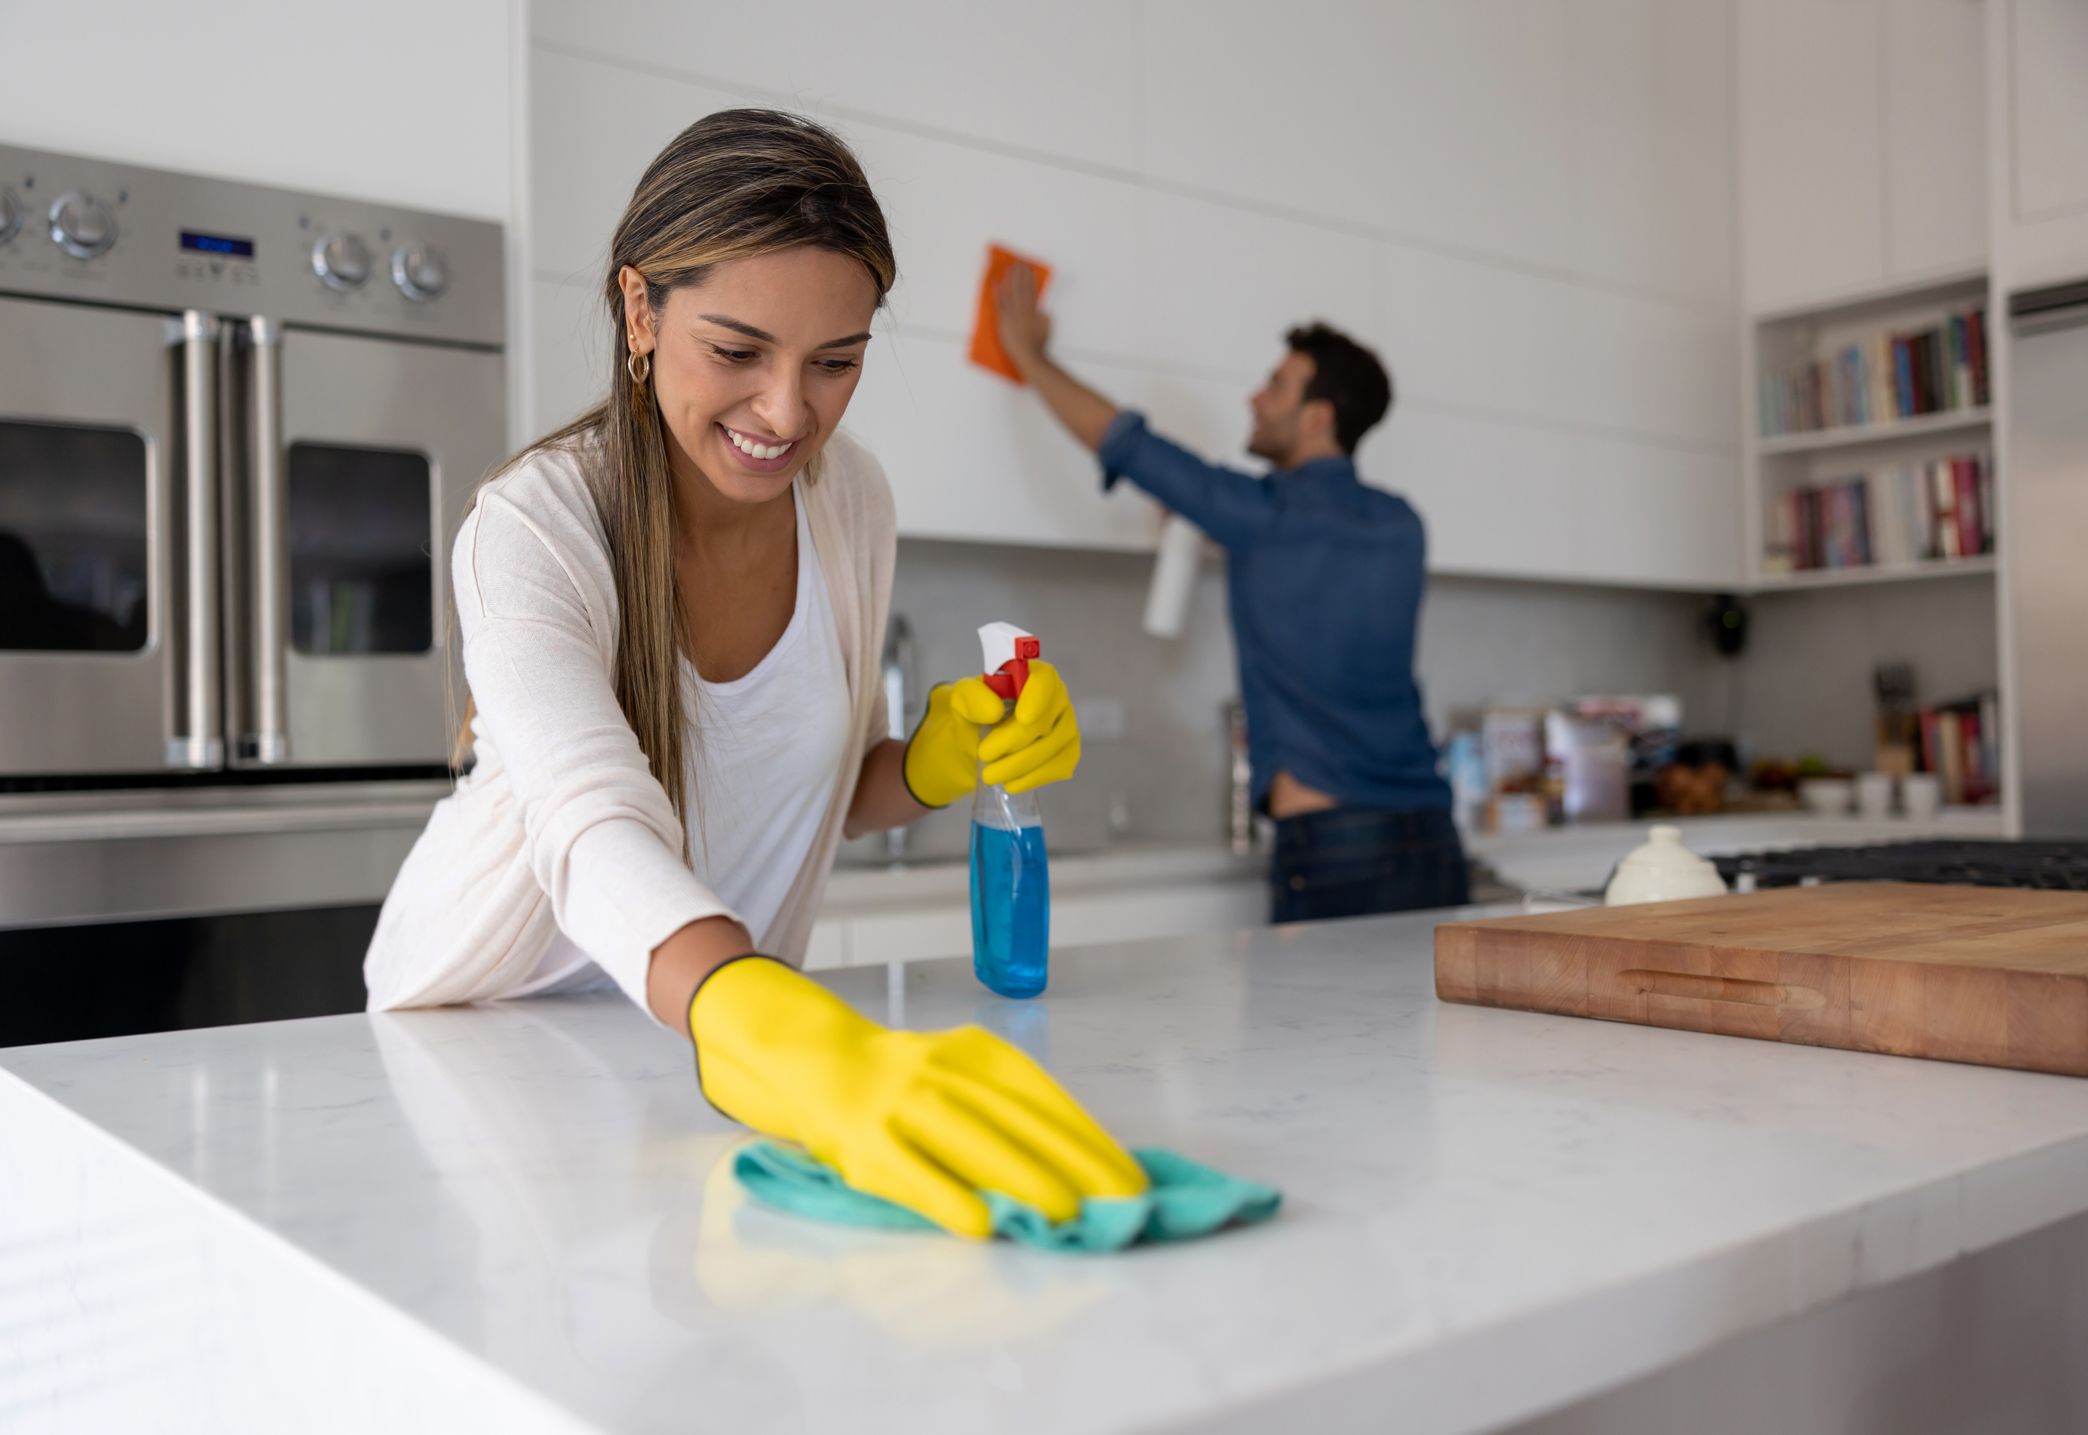 Limpieza general: 20 puntos clave para poner la casa a punto